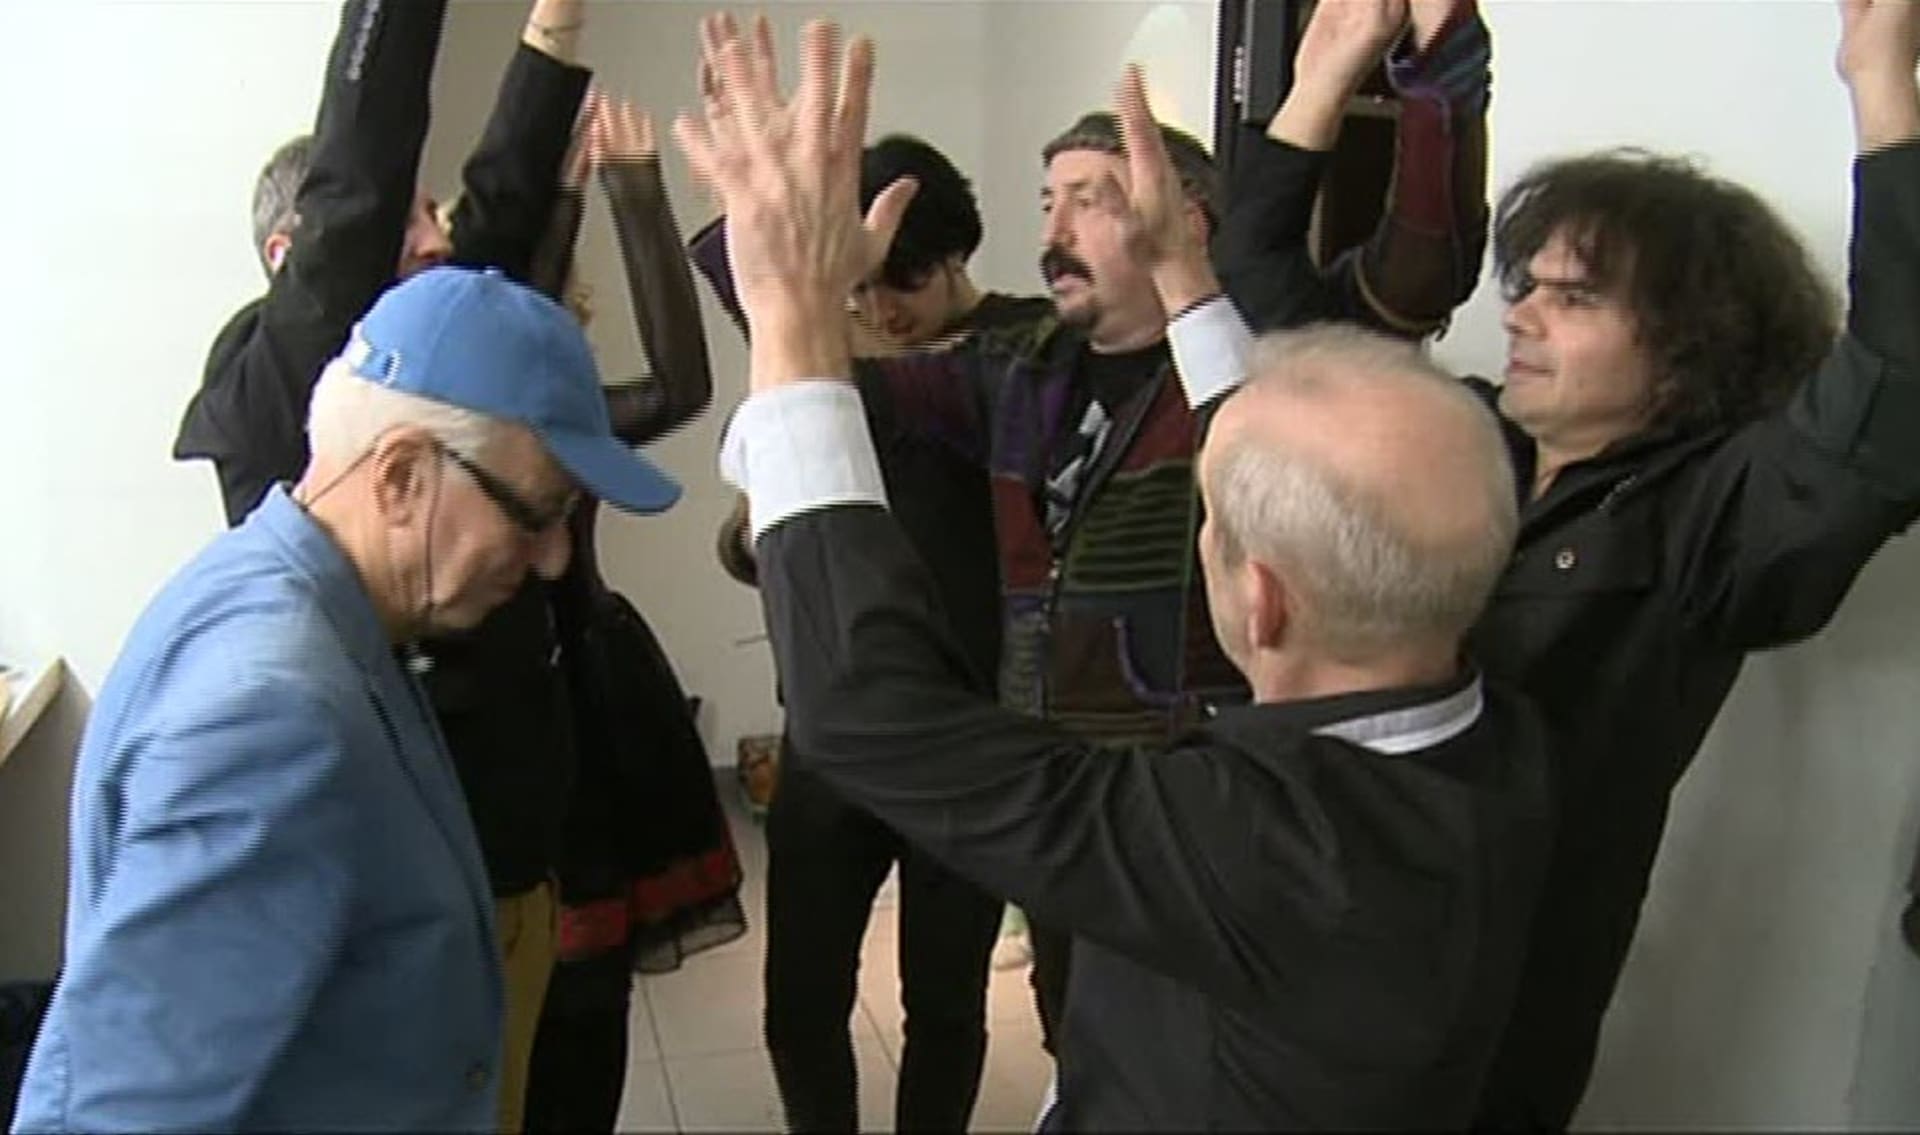 Video VIP zprávy: Ruce vzhůru! Takhle vypadá tajný rituál skupiny Čechomor